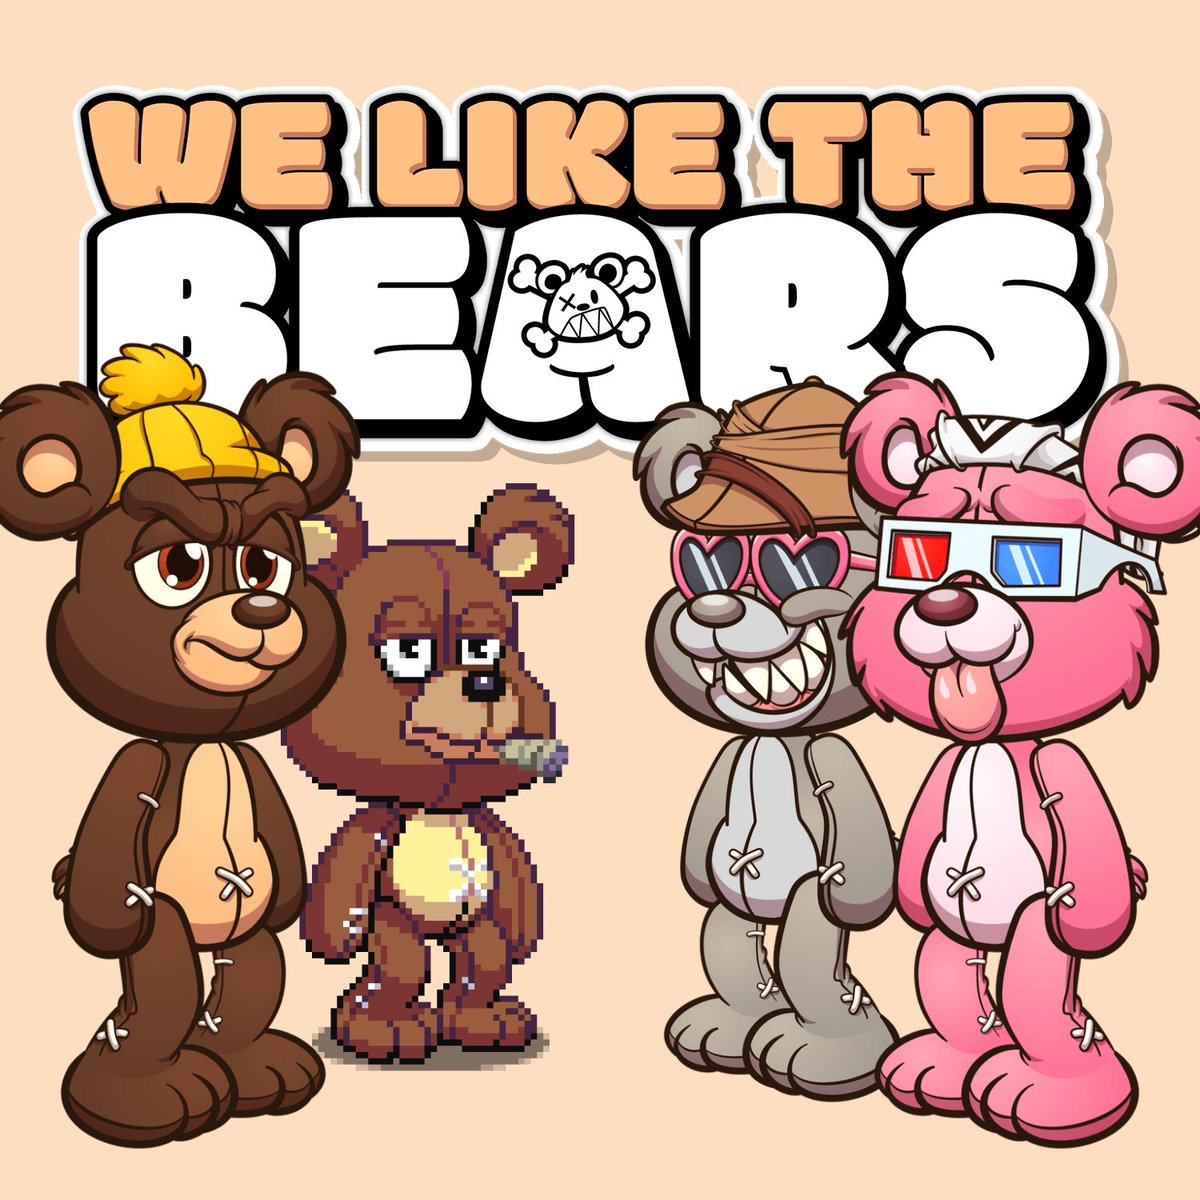 Dem' Bears....We like em' #KillaBears